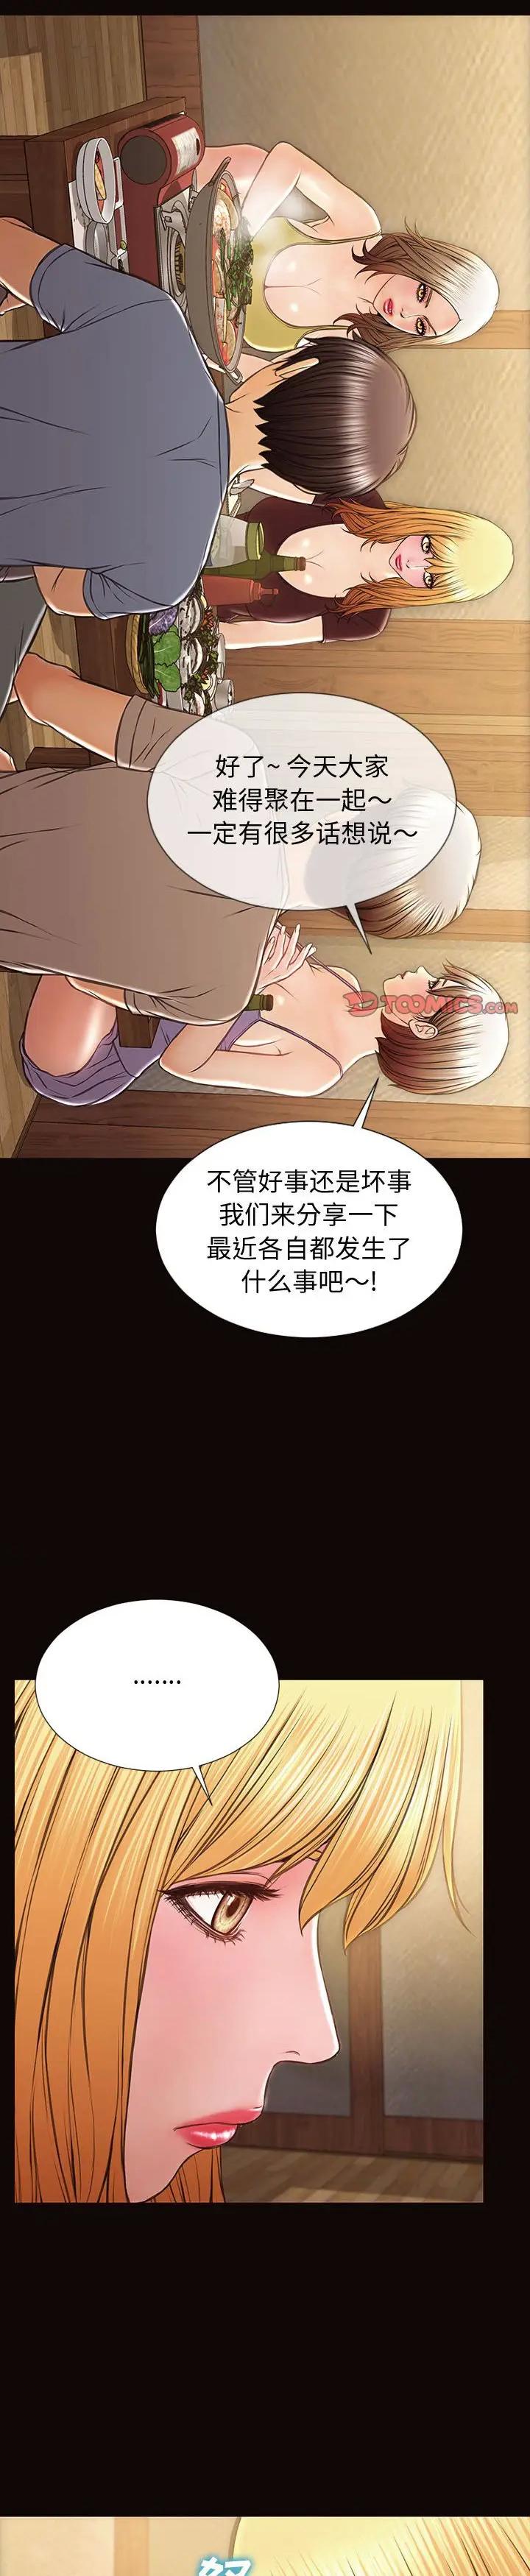 《网红出头天(网红吴妍智)》漫画 第32话